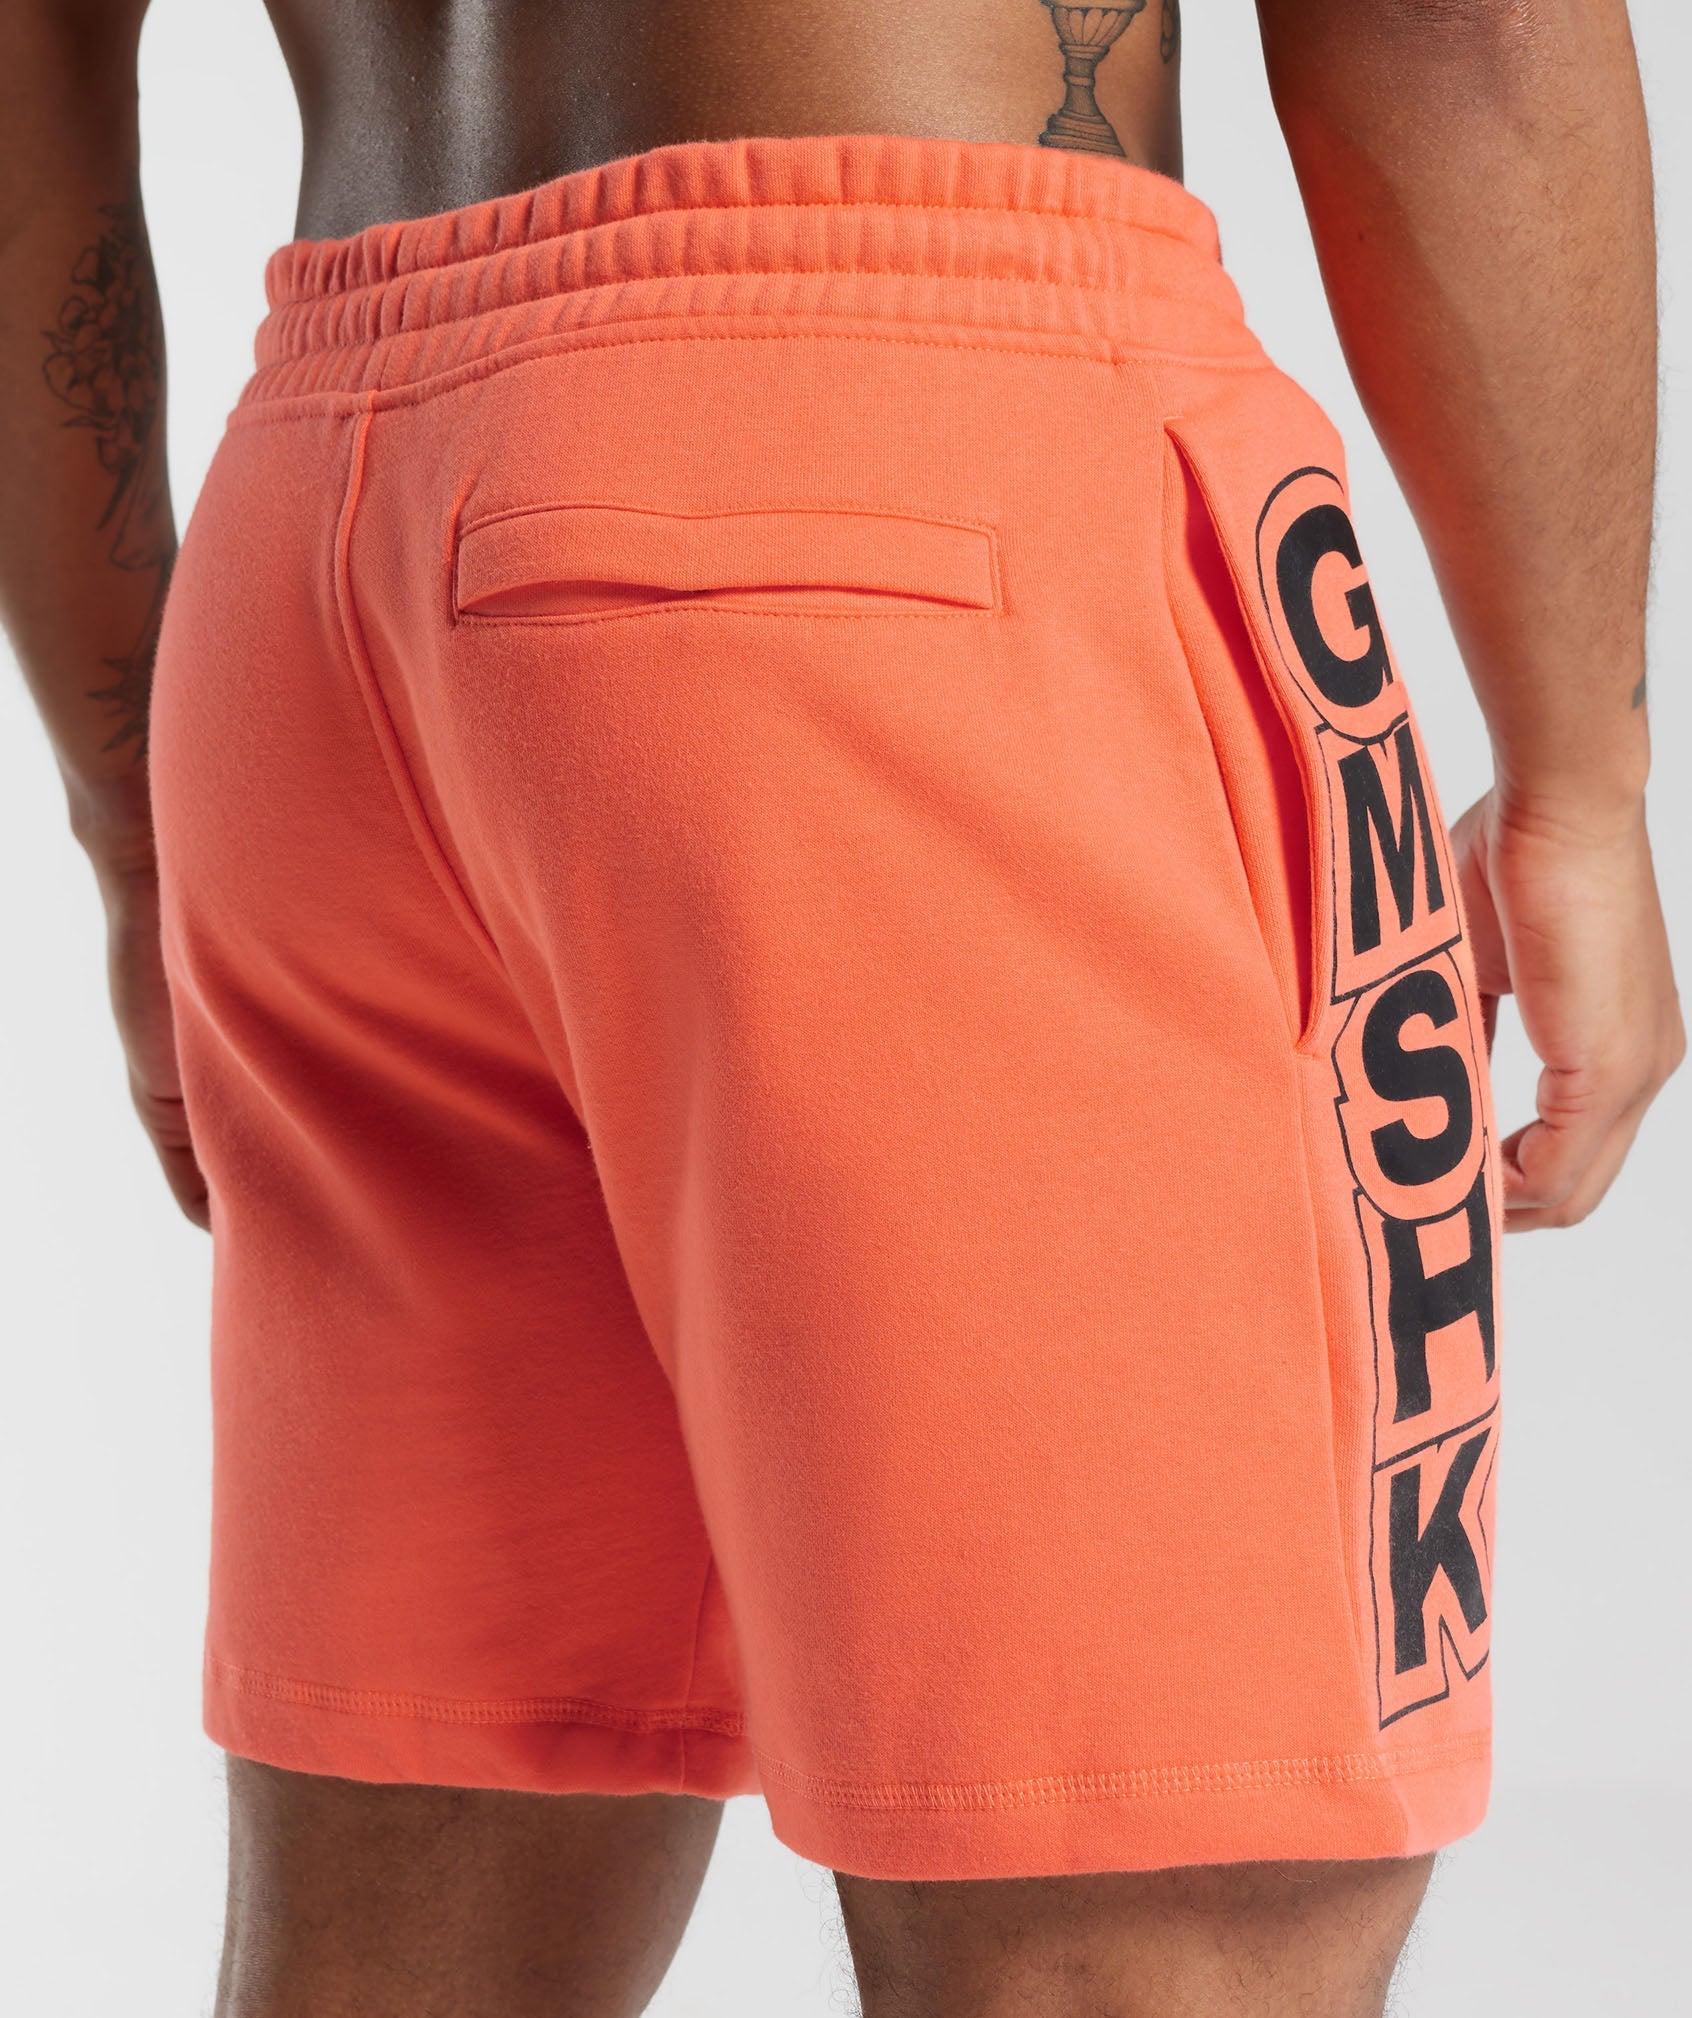 GMSHK Shorts in Solstice Orange - view 6